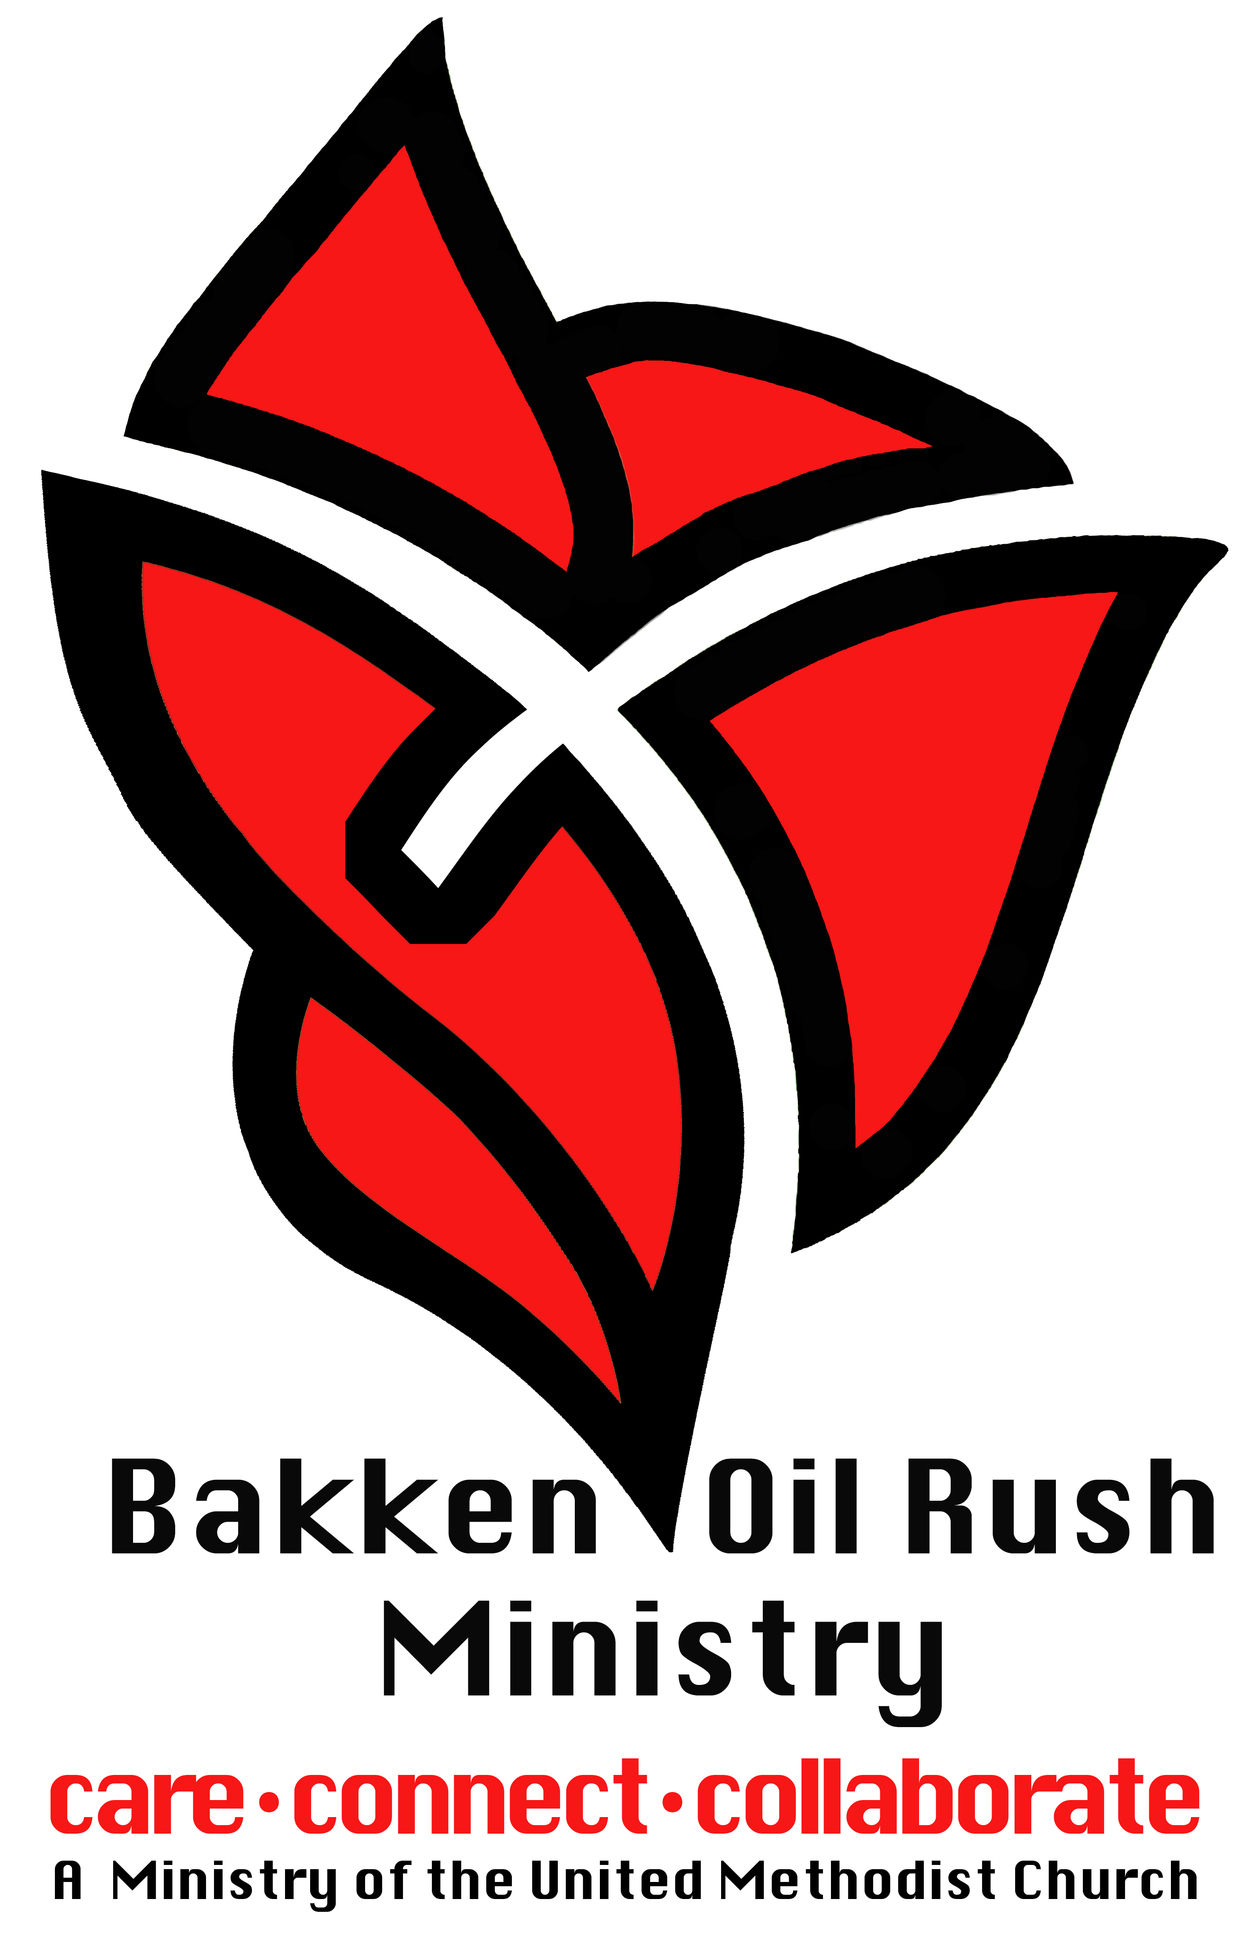 Bakken Oil Rush Ministry